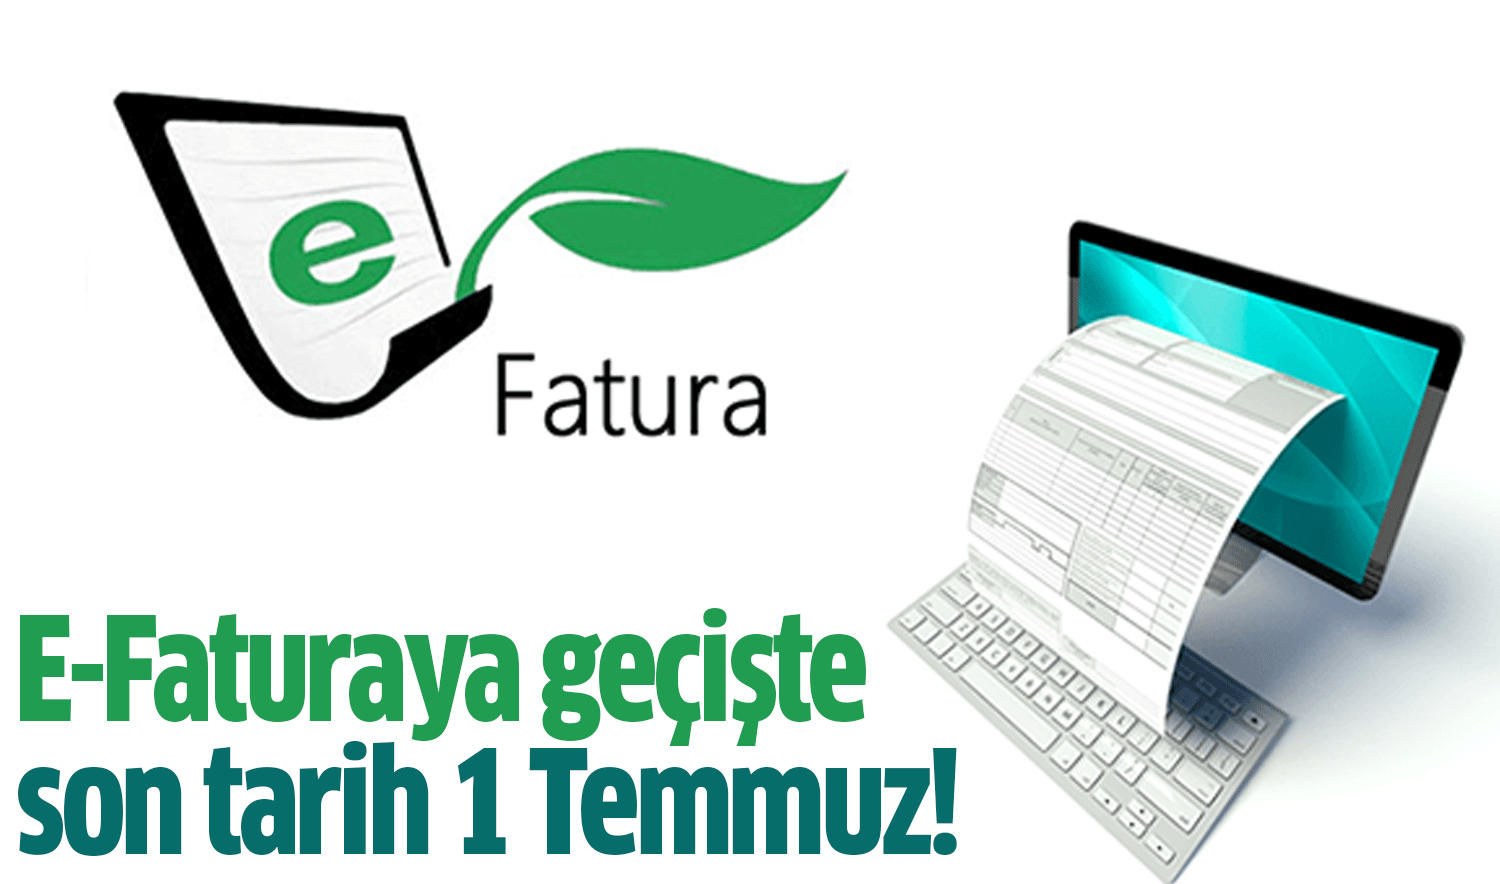 E-Faturaya geçişte son tarih 1 Temmuz!